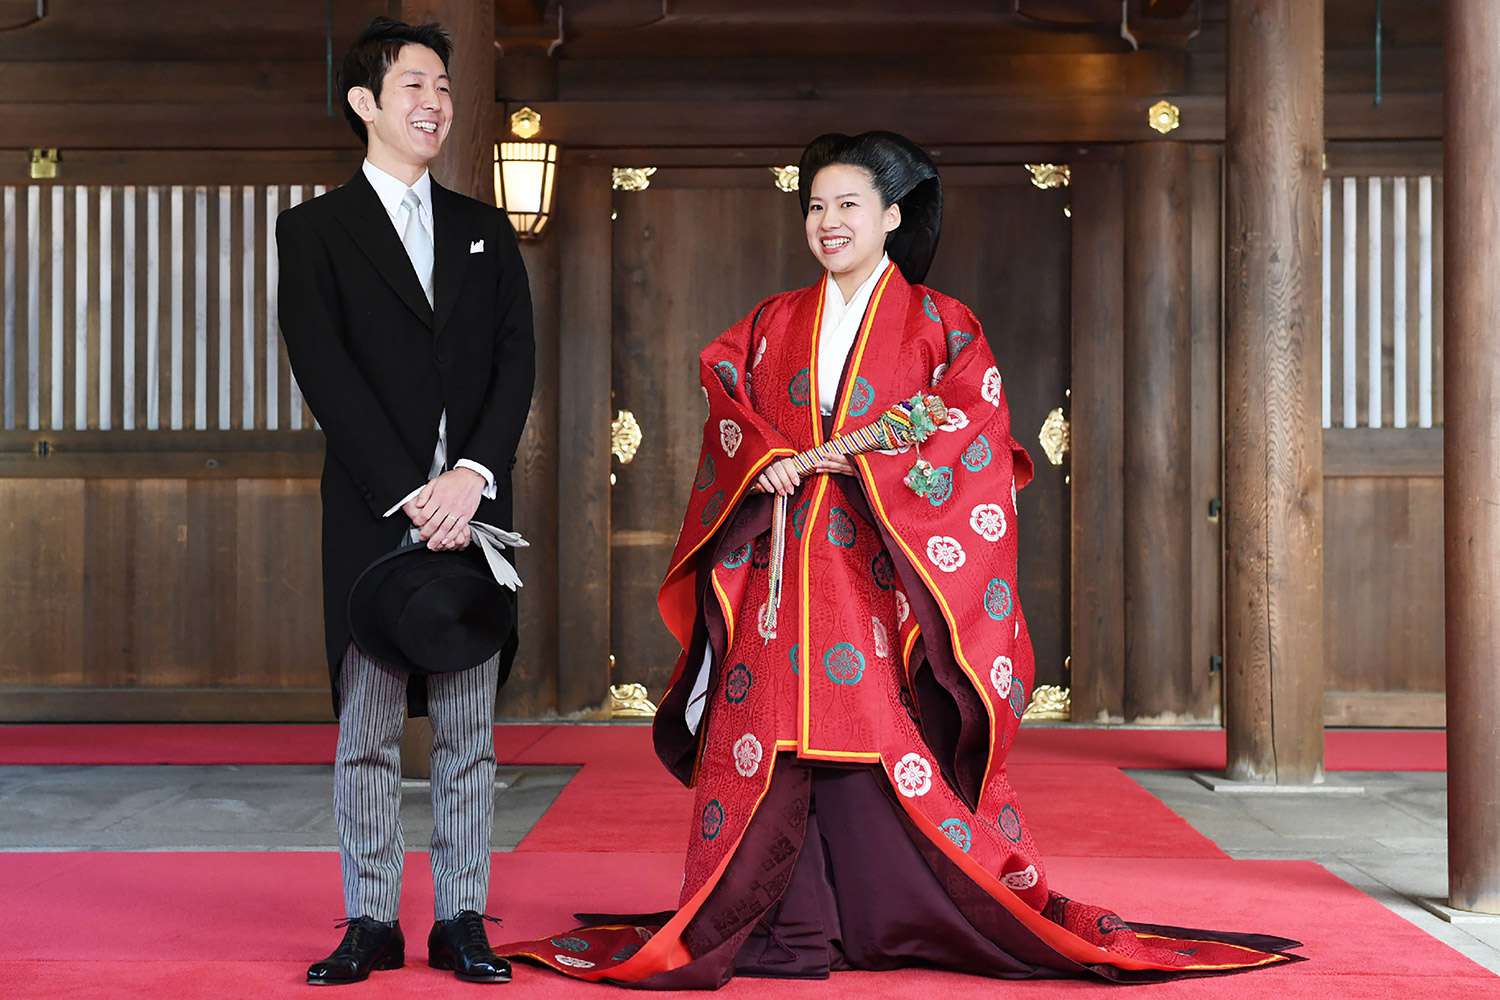 Princess Ayako (R) and her husband Kei Moriya